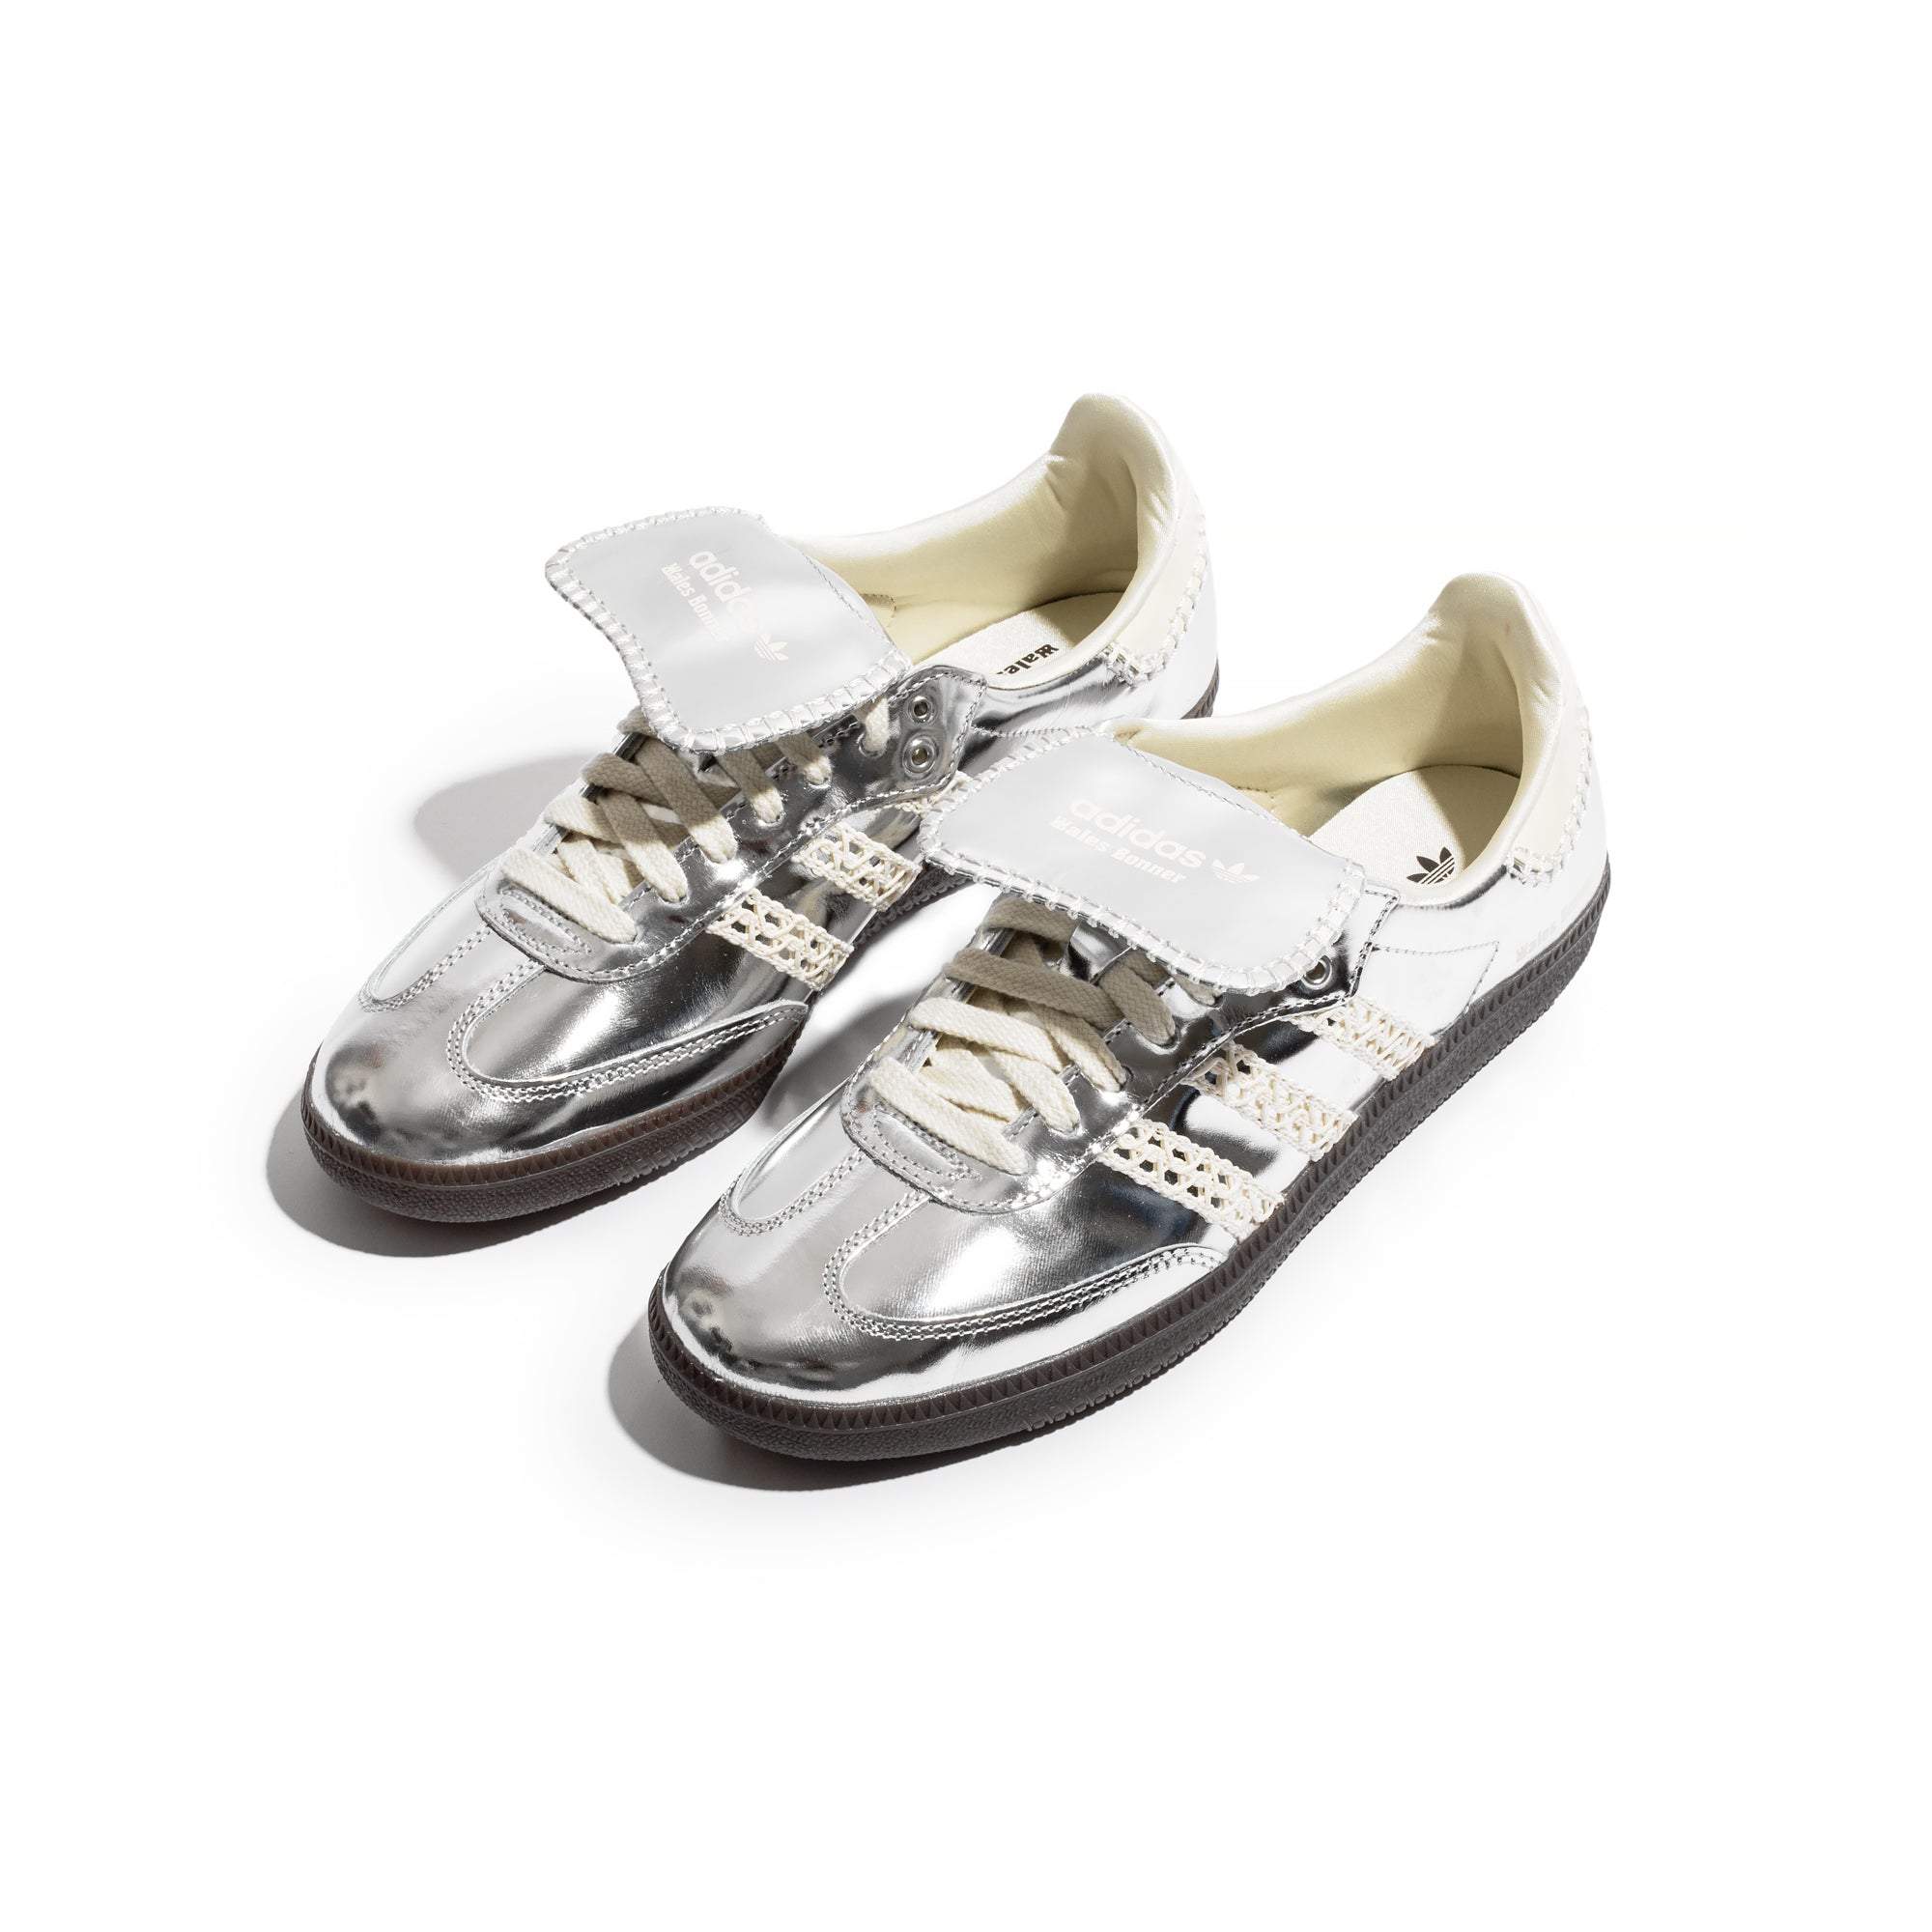 Adidas x Wales Bonner Silver Samba Shoes